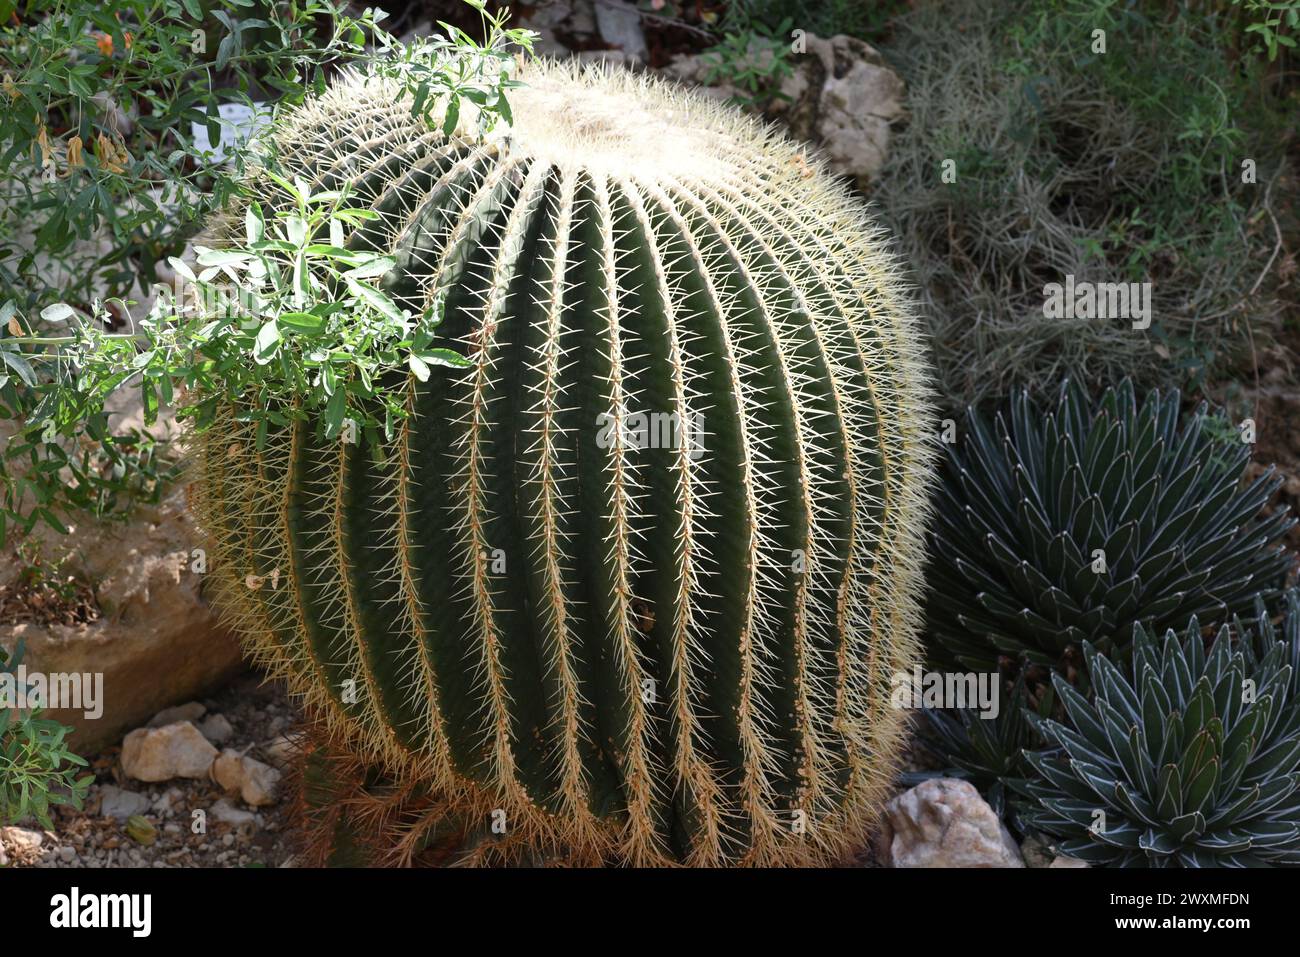 Schwiegermutterstuhl-Kaktus, Echinocactus grusonii, gehoert zu den besonders pflegeleichten Kakteen, der zudem noch eine interessante Optik aufweist. Banque D'Images